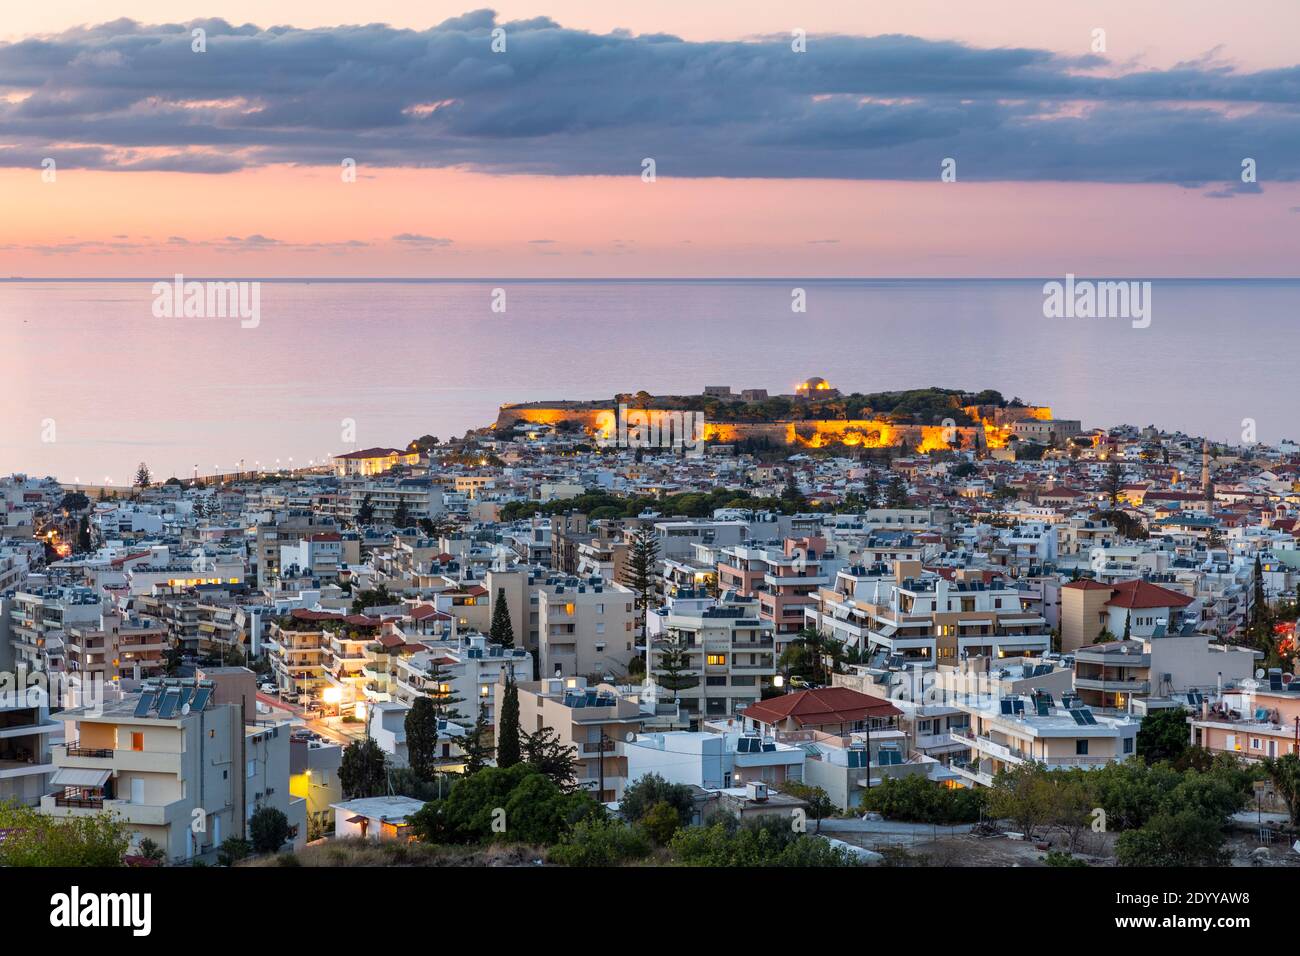 Vista panoramica sulla città di Rethymno illuminata al crepuscolo, che mostra la città vecchia, Fortezza Castello, e vista mare, Creta, Grecia Foto Stock